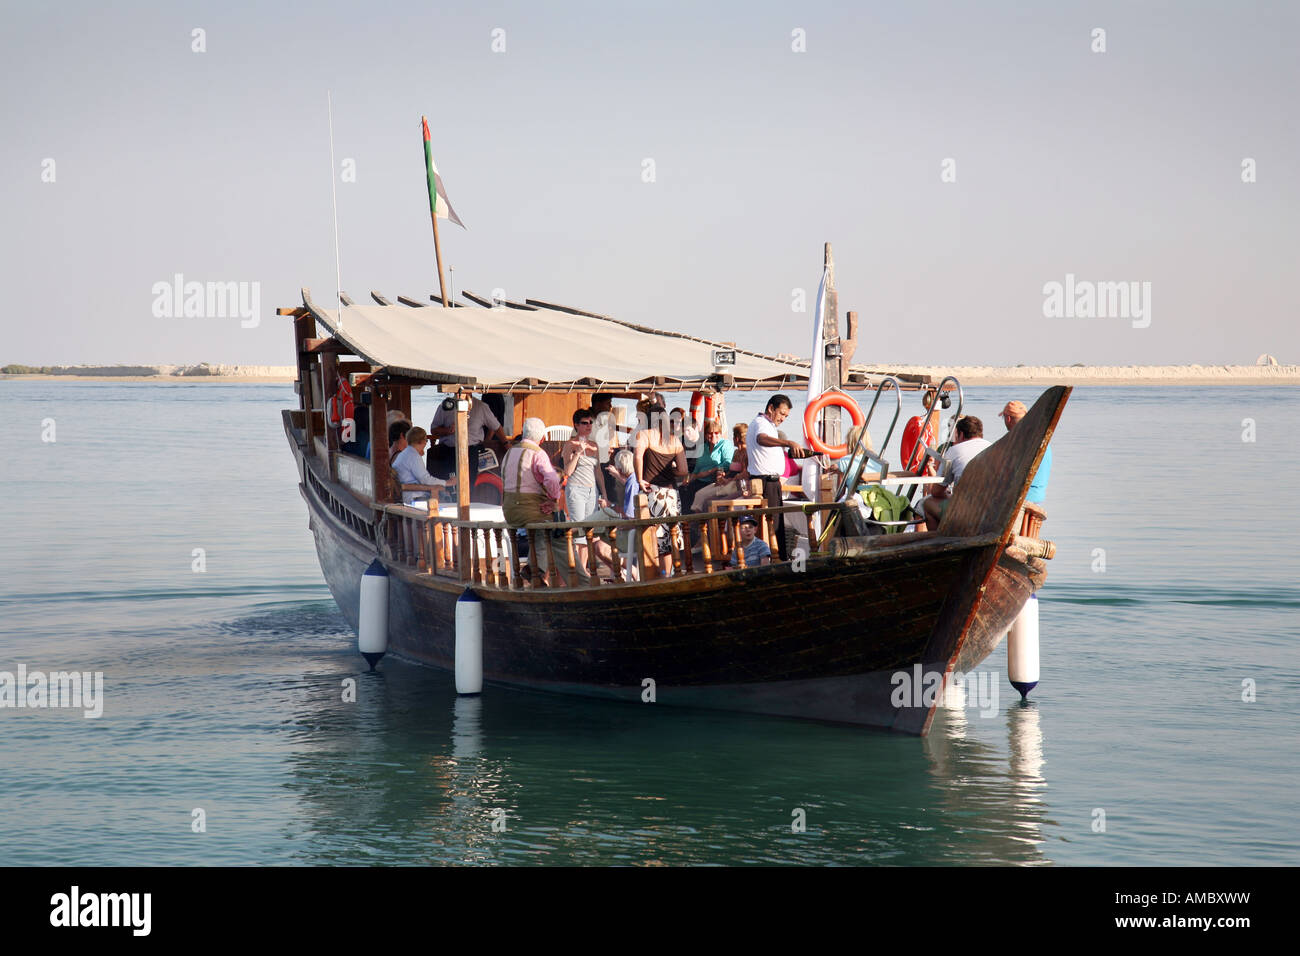 Eine Bootsparty an Bord einer traditionellen Dhau, Abu Dhabi, Vereinigte Arabische Emirate Stockfoto